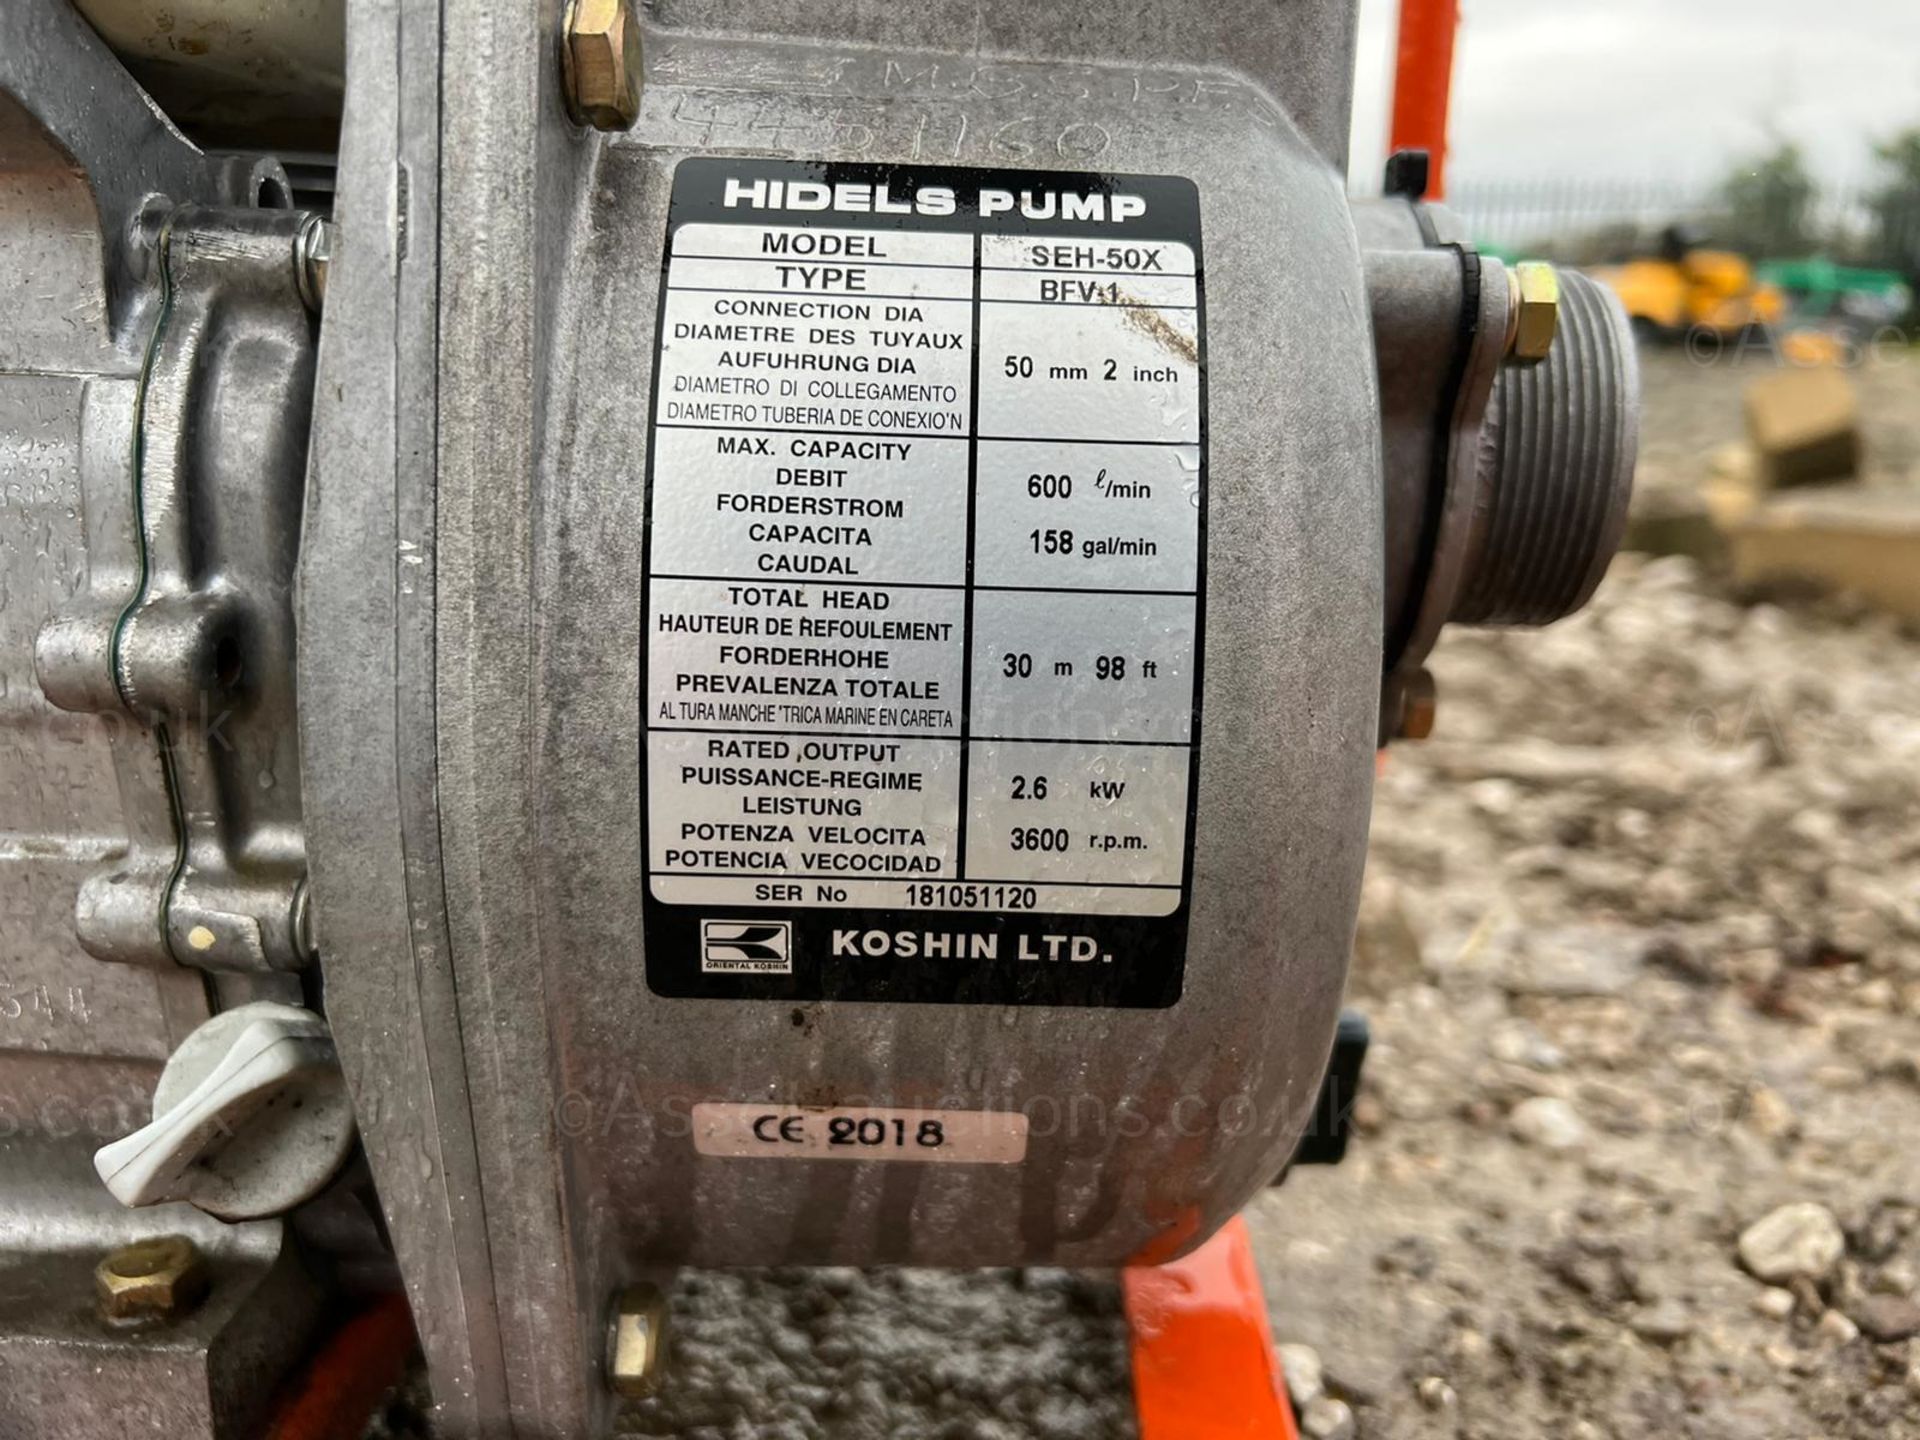 2018 HONDA 2" WATER PUMP, IN WORKING ORDER, HONDA GX120 ENGINE *PLUS VAT* - Image 7 of 7